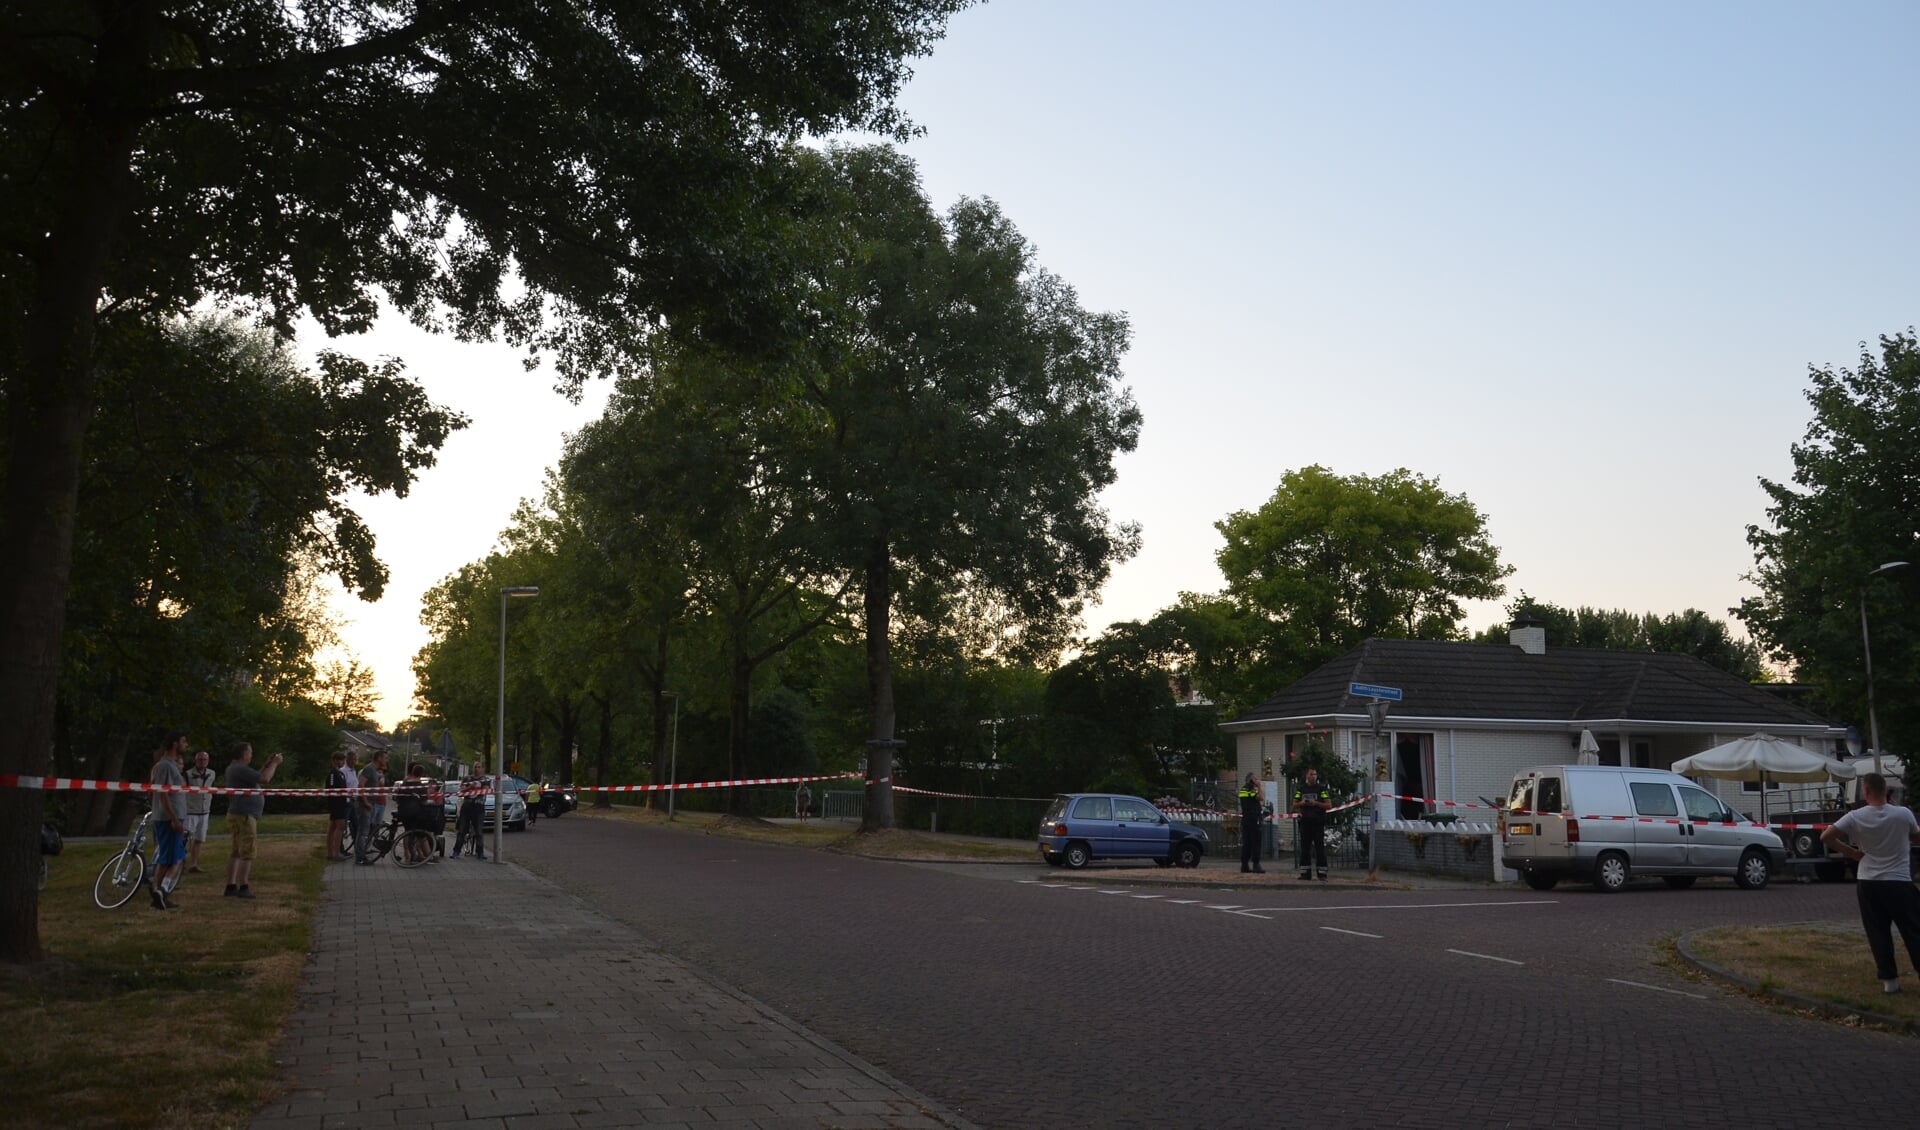 Straat in Zutphen afgezet voor politieonderzoek naar schietincident. Foto: GinoPress B.V.